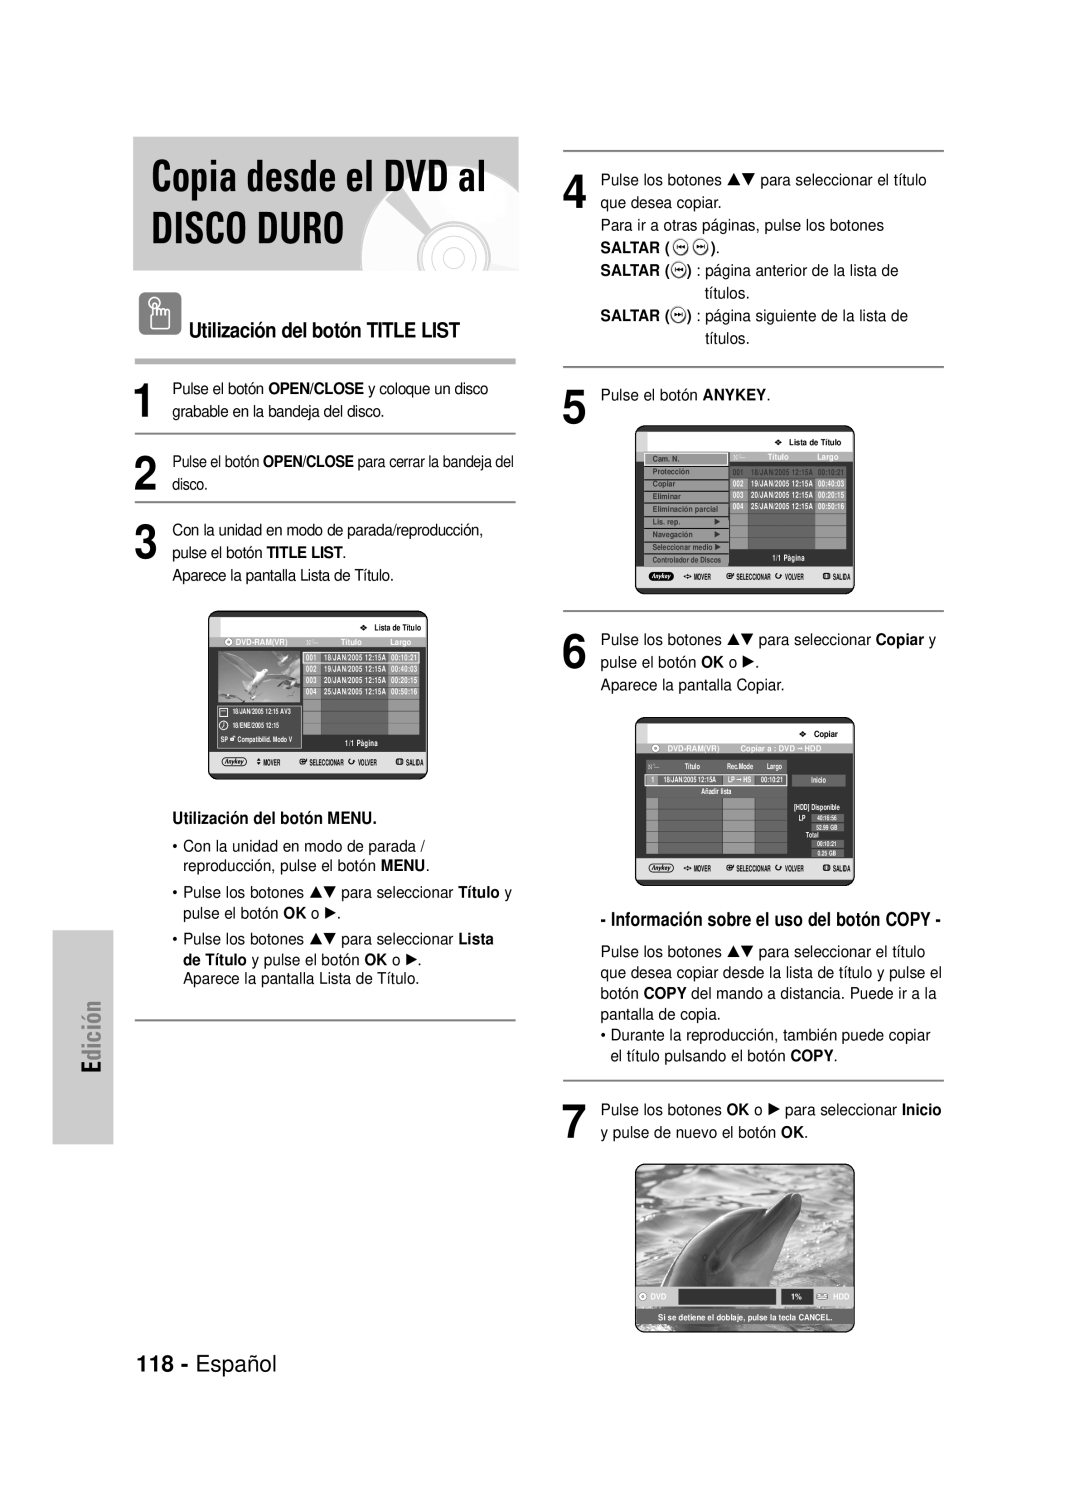 Samsung DVD-HR725/EUR manual Disco Duro, Copia desde el DVD al, Español, Edición, Utilización del botón TITLE LIST, Saltar 